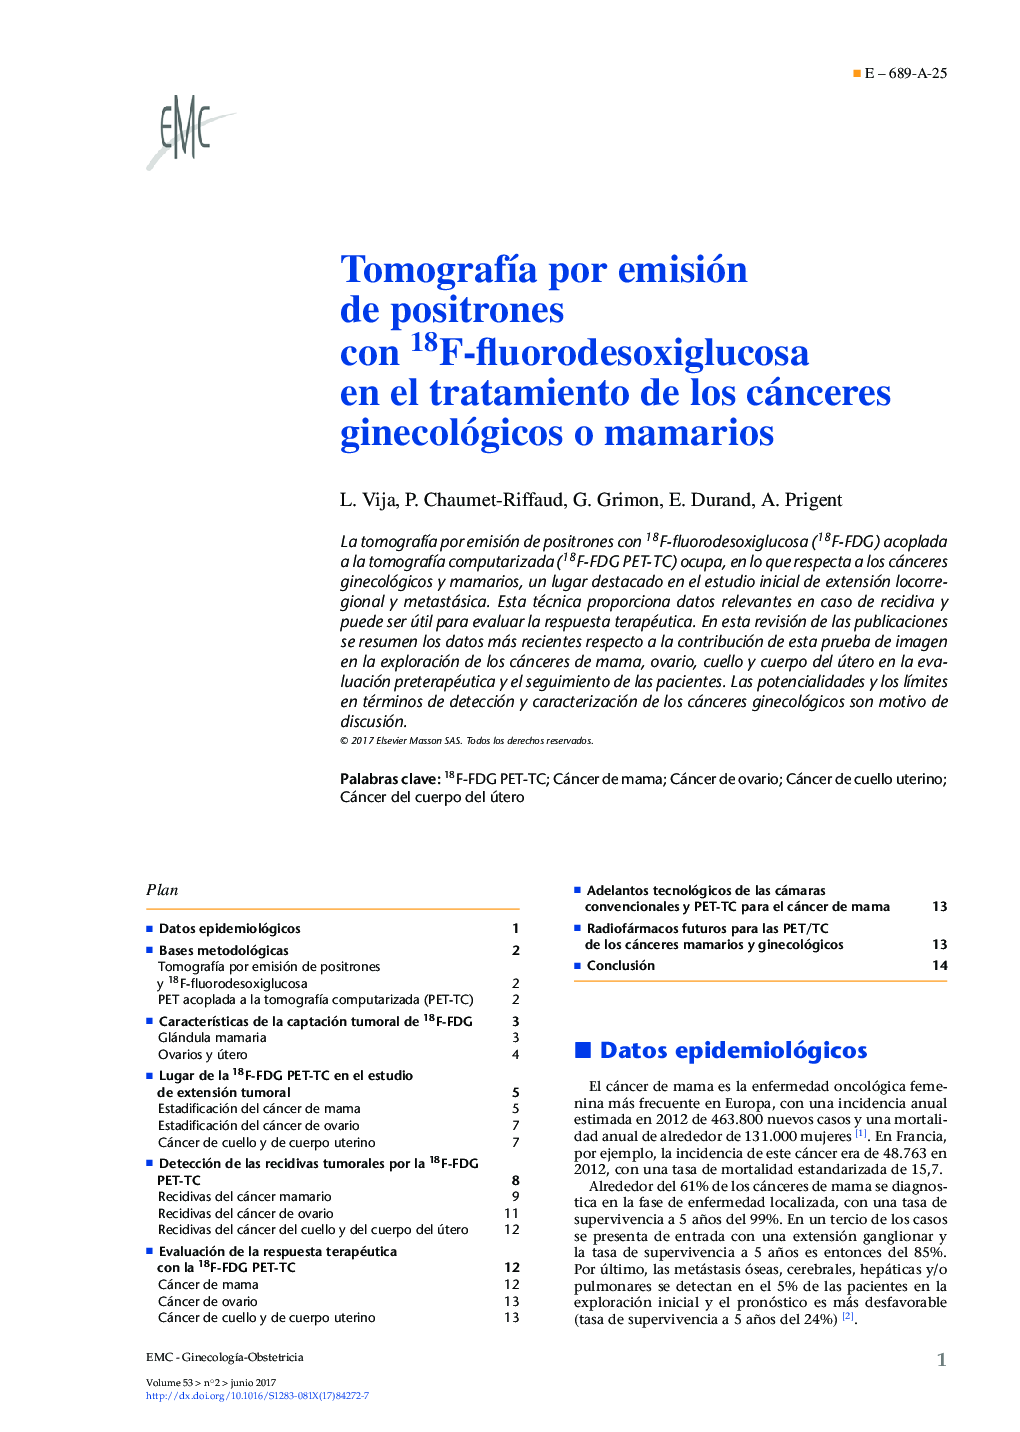 TomografÃ­a por emisión de positrones con 18F-fluorodesoxiglucosa en el tratamiento de los cánceres ginecológicos o mamarios